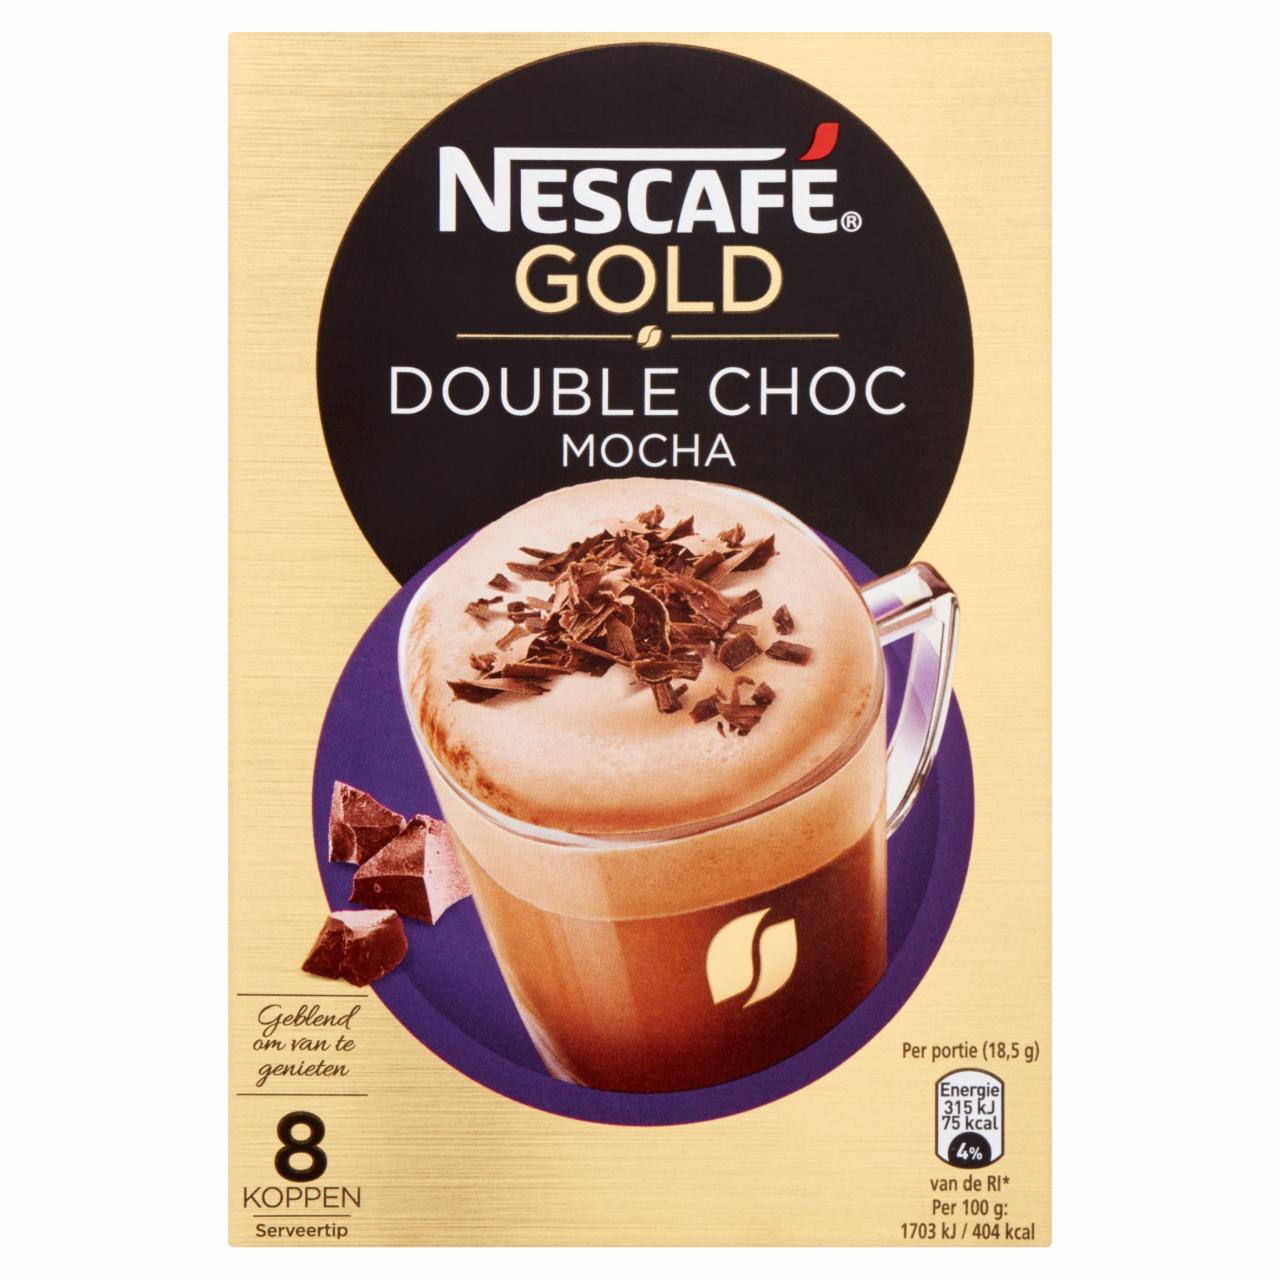 Képek - Nescafé Gold Double Choc Mocha azonnal oldódó kávéspecialitás csokoládéporral 8 x 18,5 g (148 g)